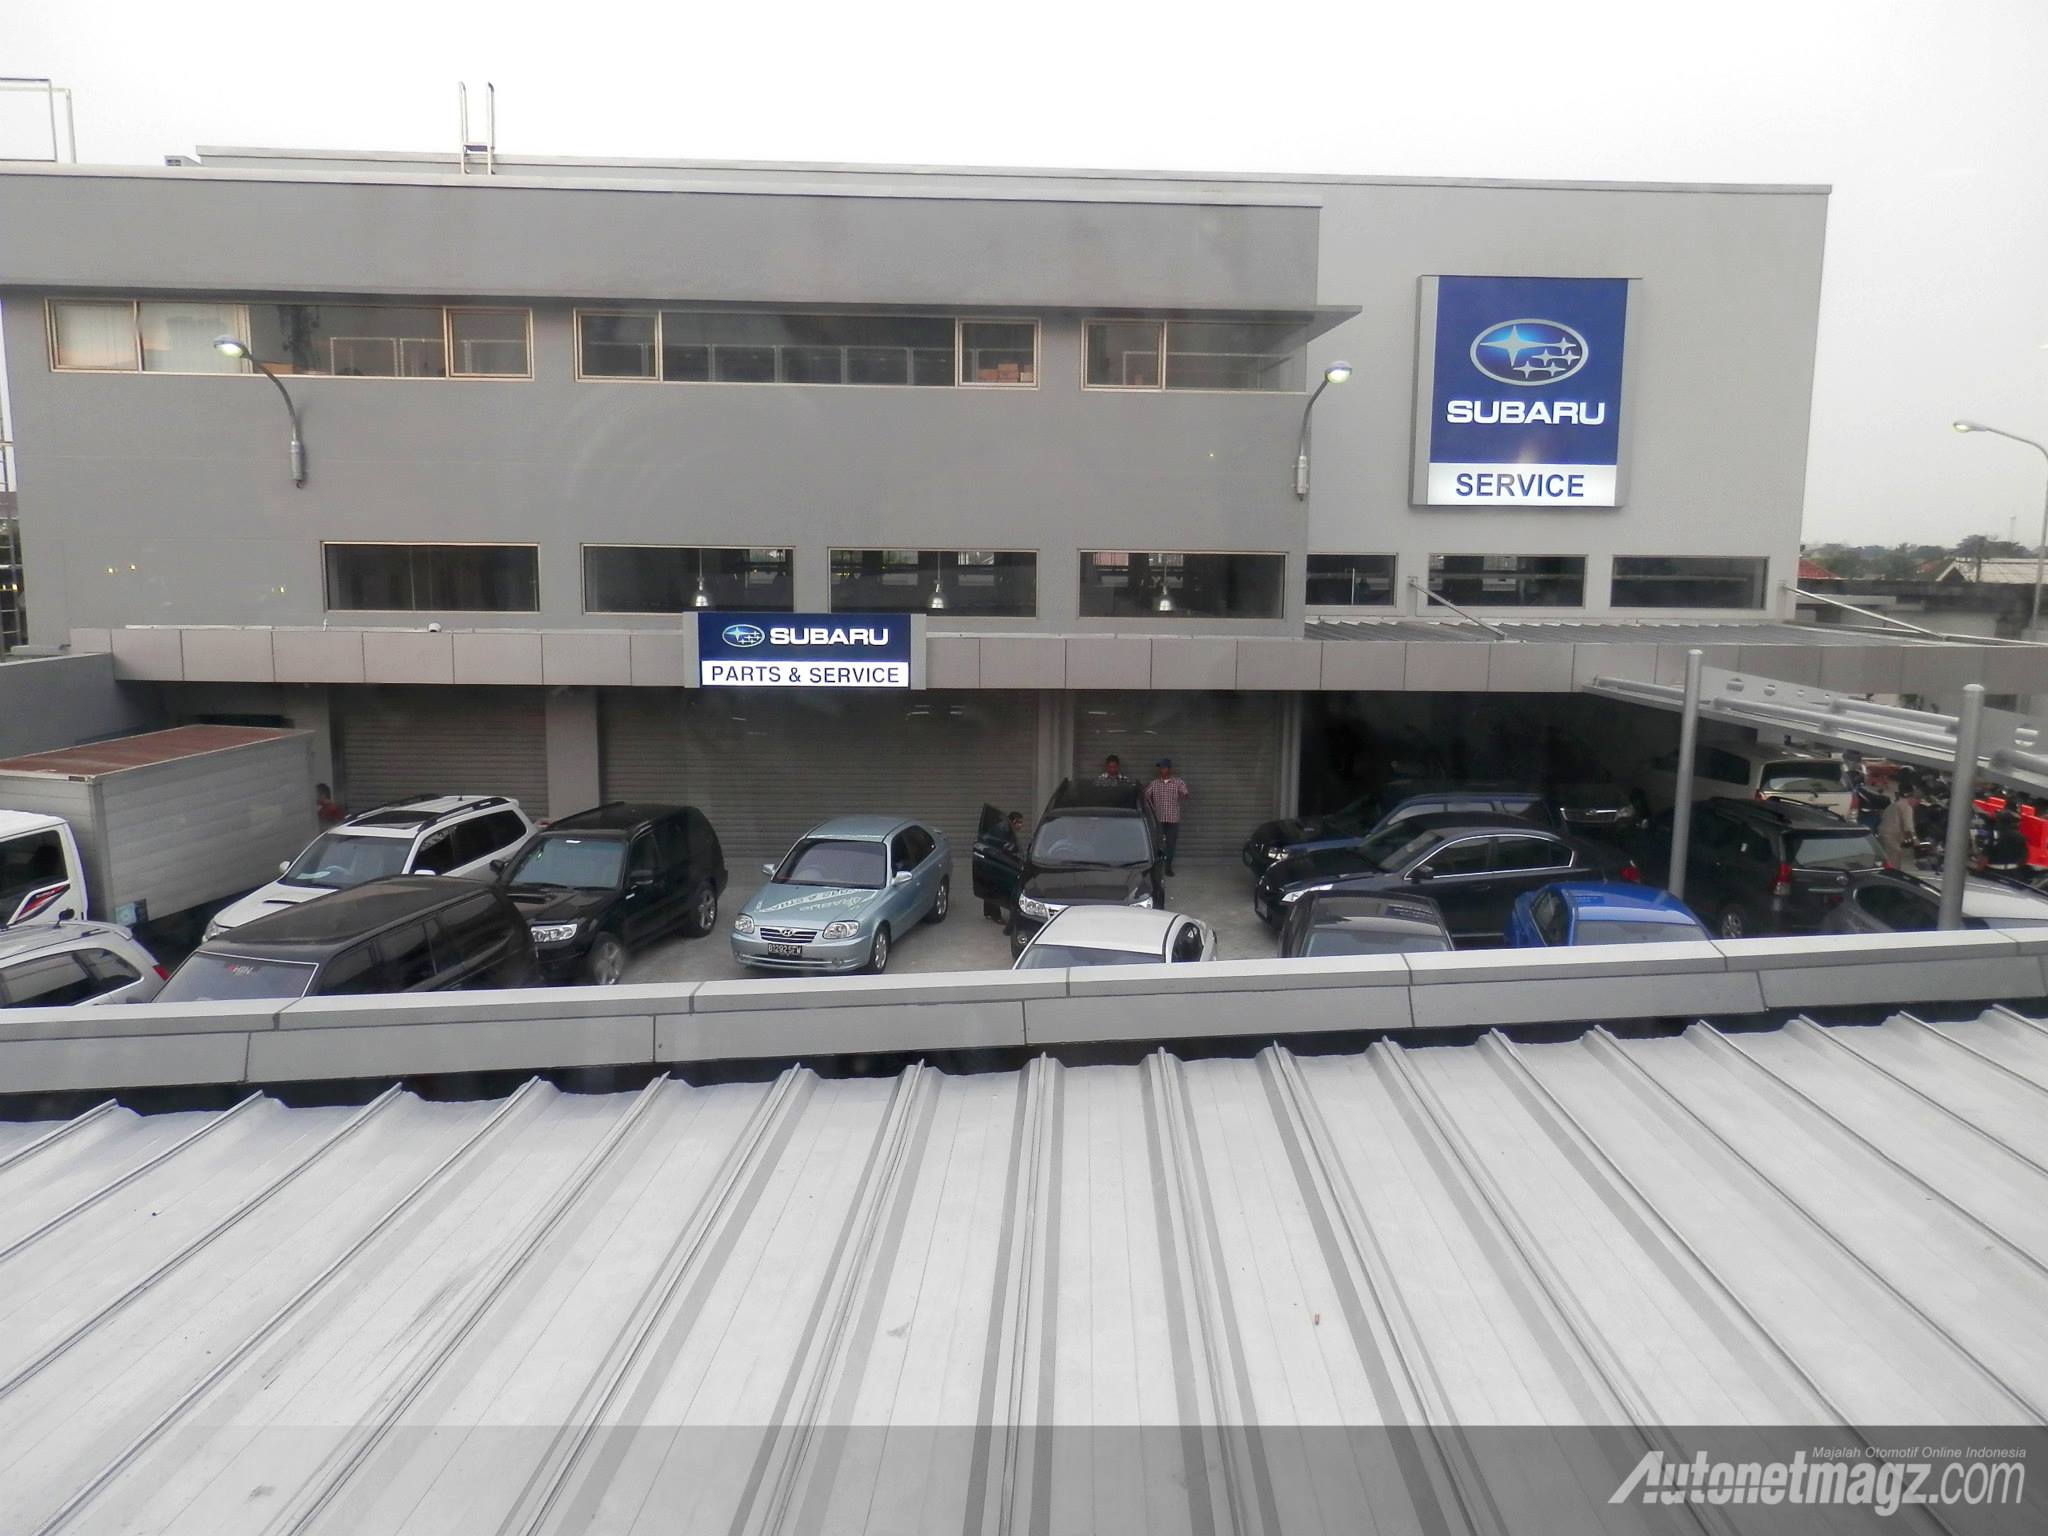 Berita, Showroom Sales Service Sparepart Subaru Pondok Indah: Kantor Pusat Subaru Indonesia Resmi Dibuka